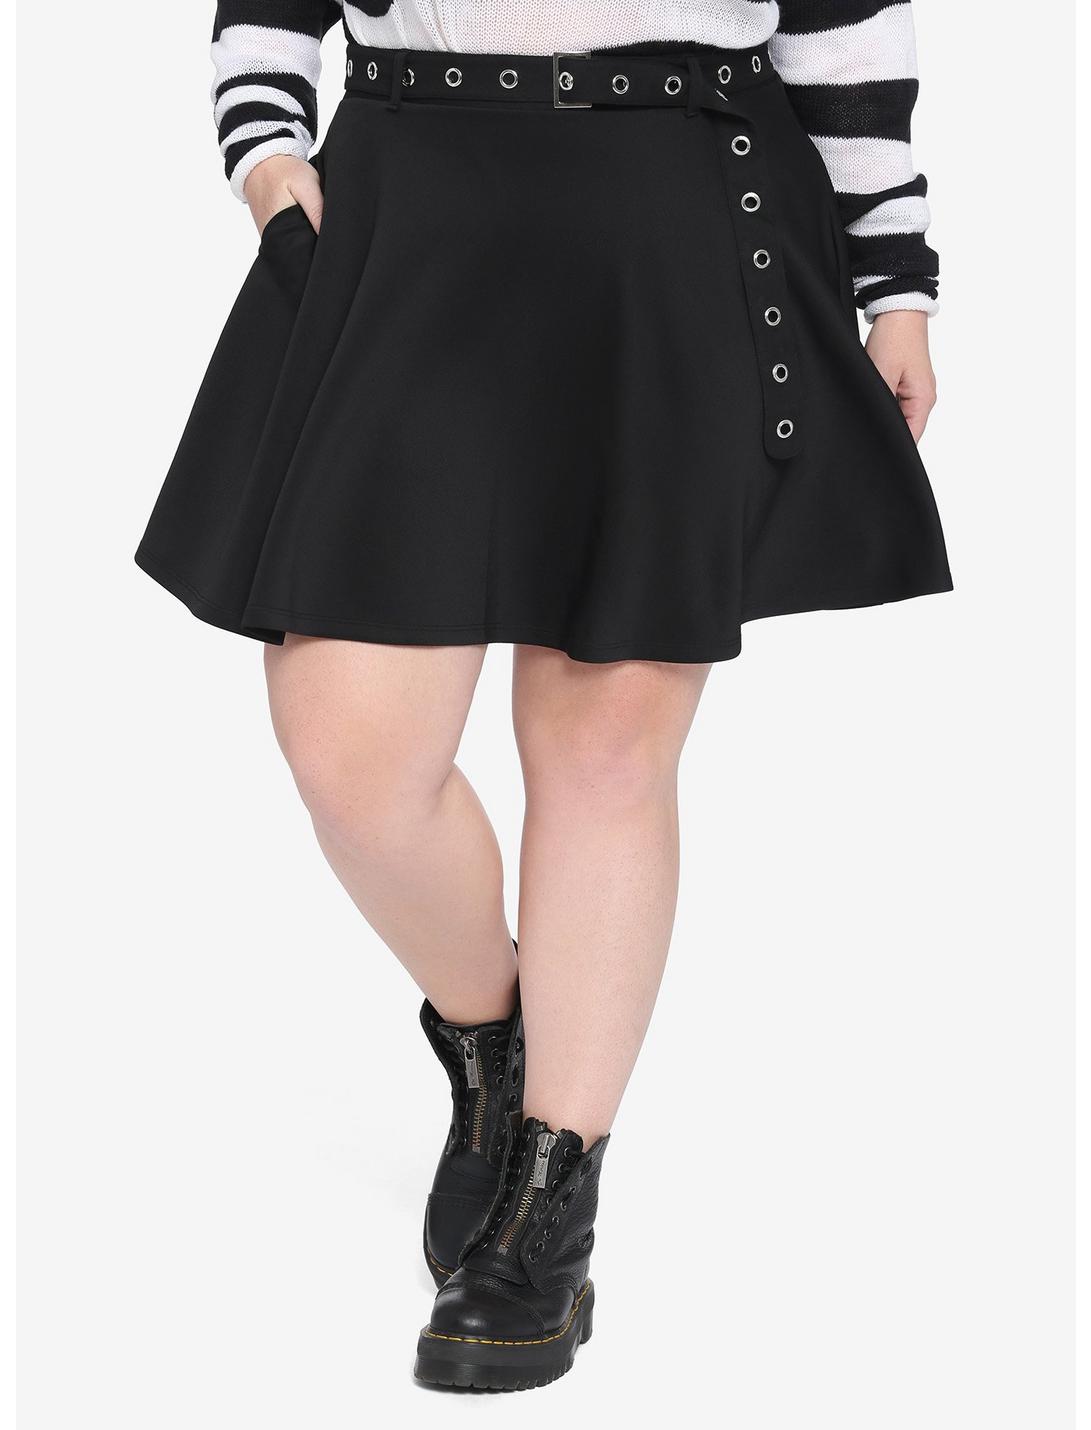 Black Skater Skirt With Grommet Belt Plus Size, BLACK, hi-res